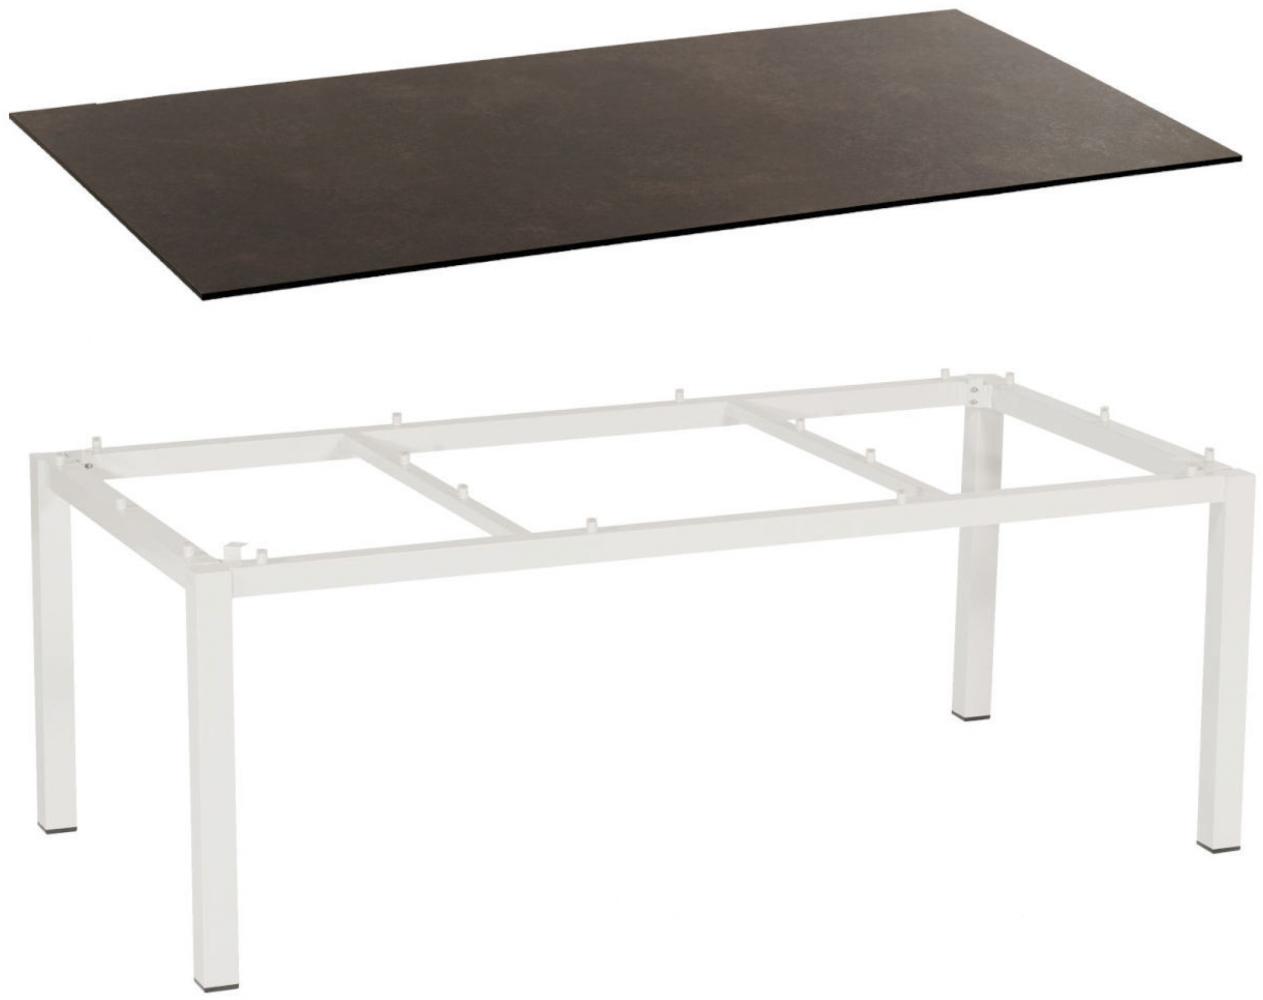 Sonnenpartner Gartentisch Base 200x100 cm Aluminium weiß Tischsystem Tischplatte Compact HPL Keramikoptik Bild 1